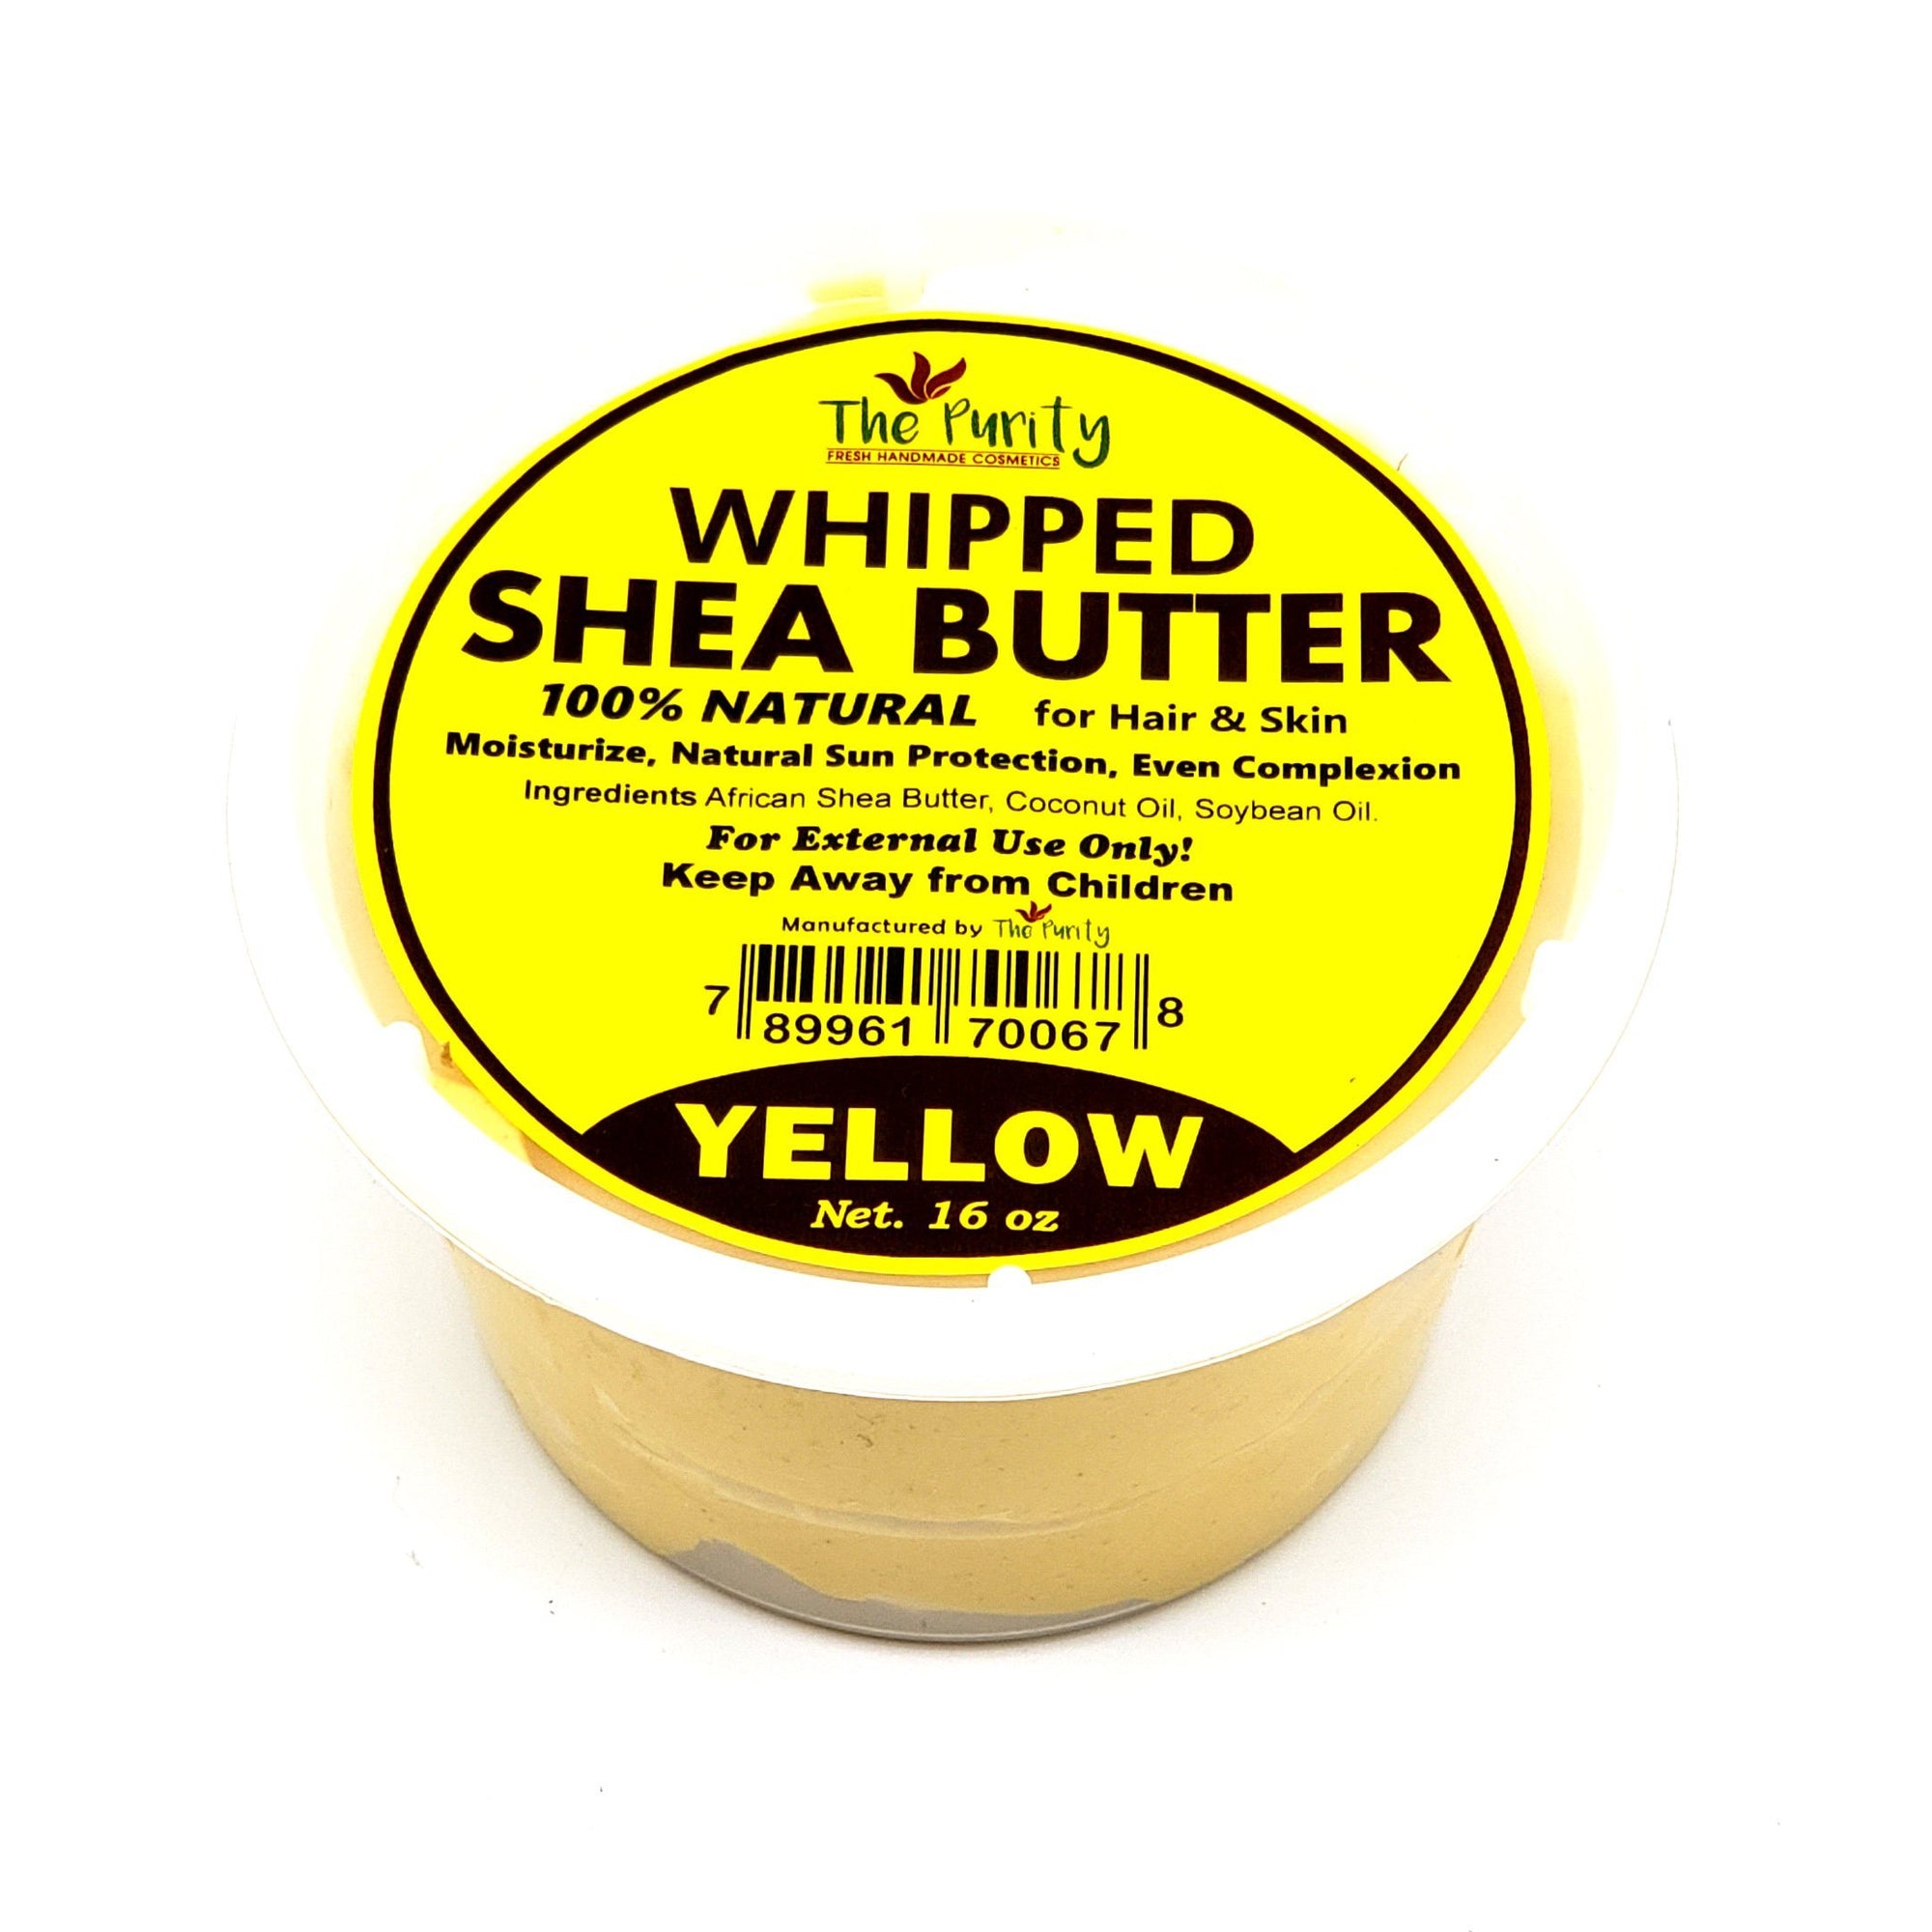 MAKUMBA WHIPPED 100% YELLOW SHEA BUTTER 8oz - Canada wide beauty